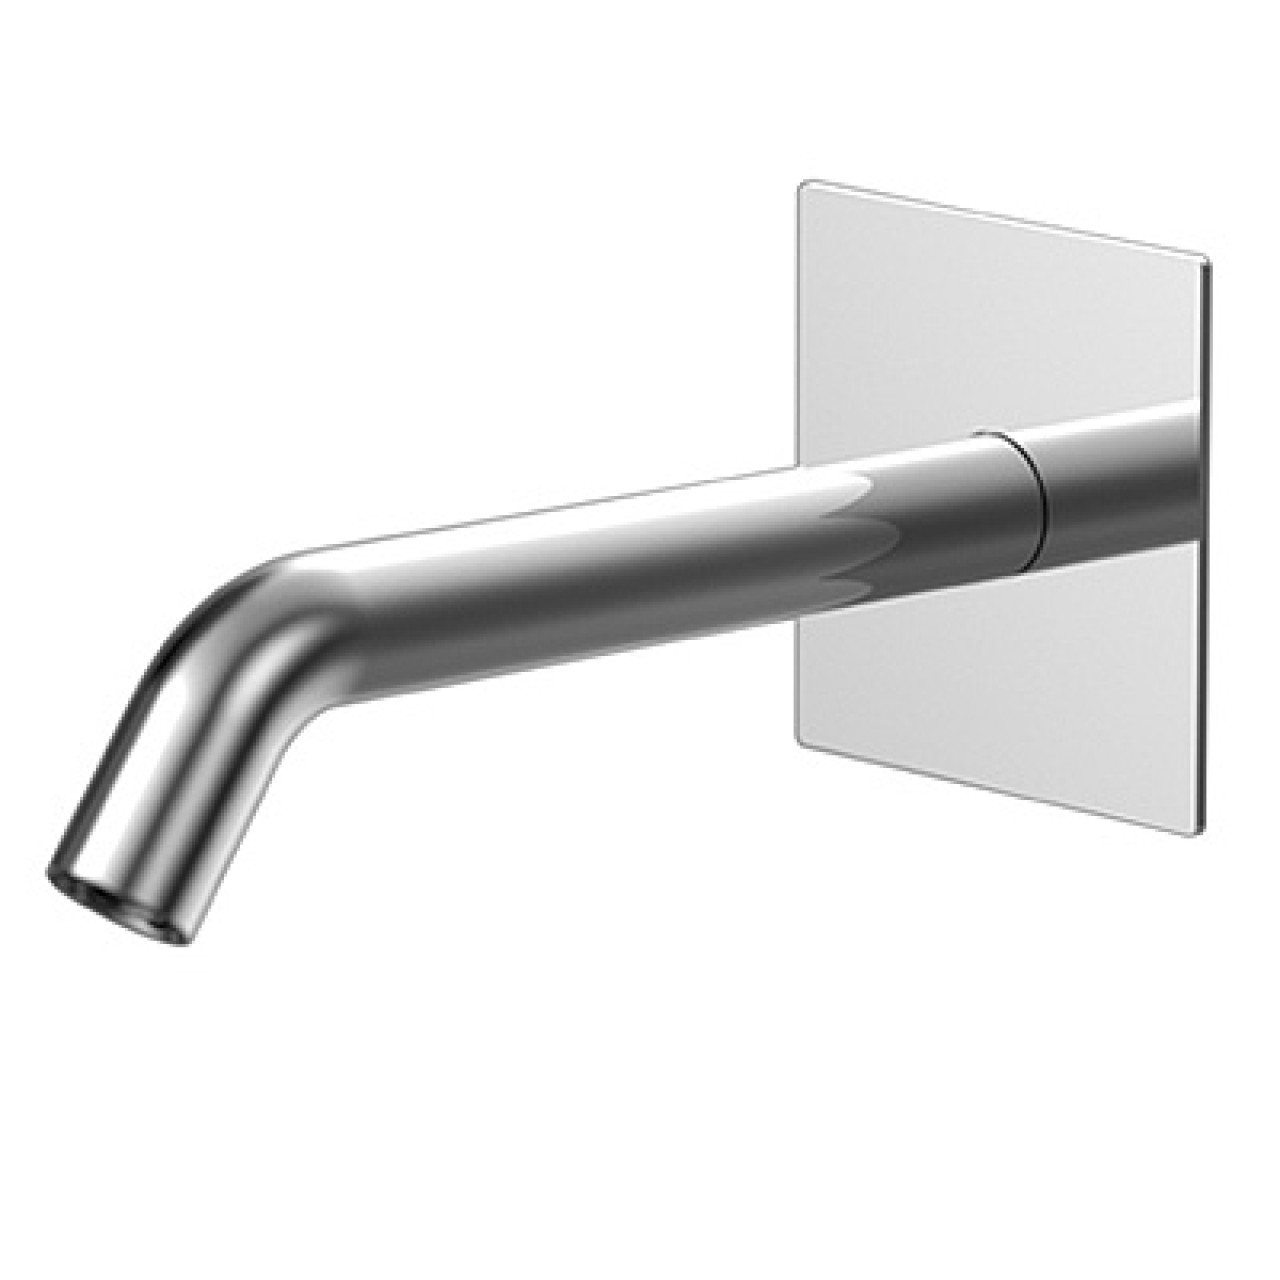 Diametro35 - Wall Spout For Bathtub